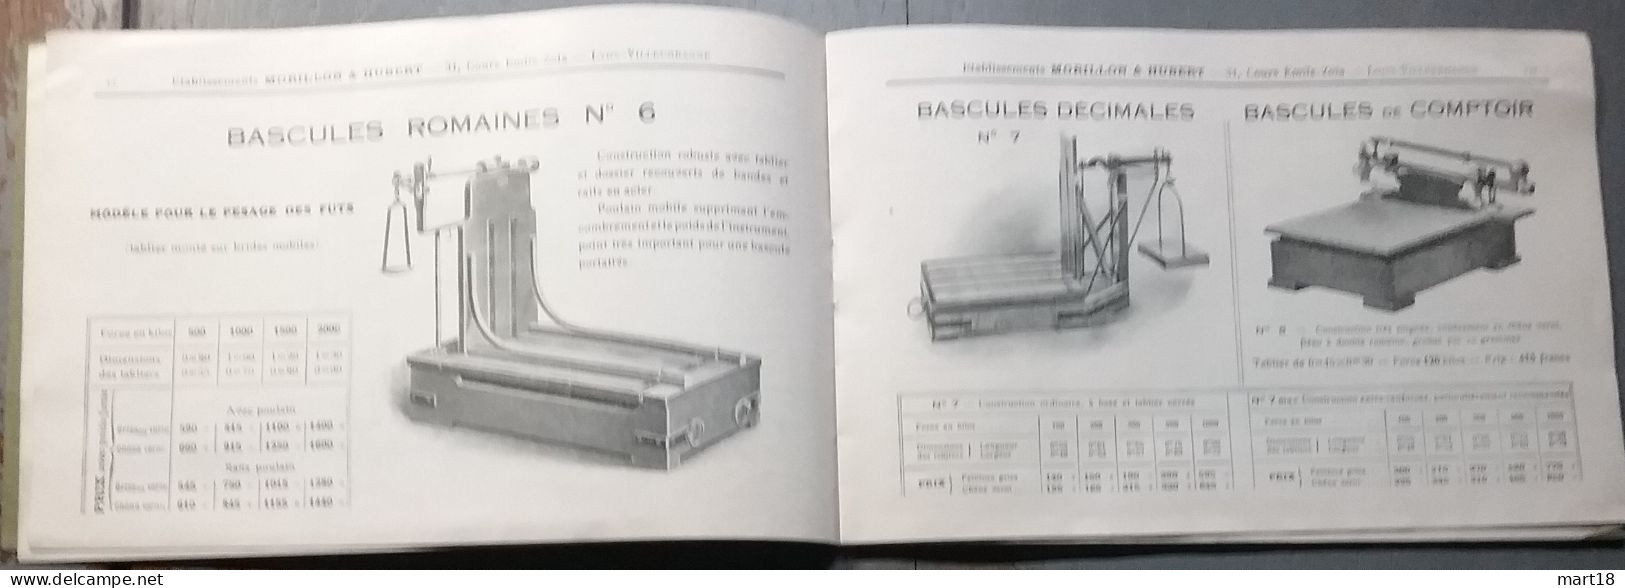 Catalogue 1925 MORILLON & HUBERT Instruments De Pesage Balance Bascule Crochets - Autres Appareils